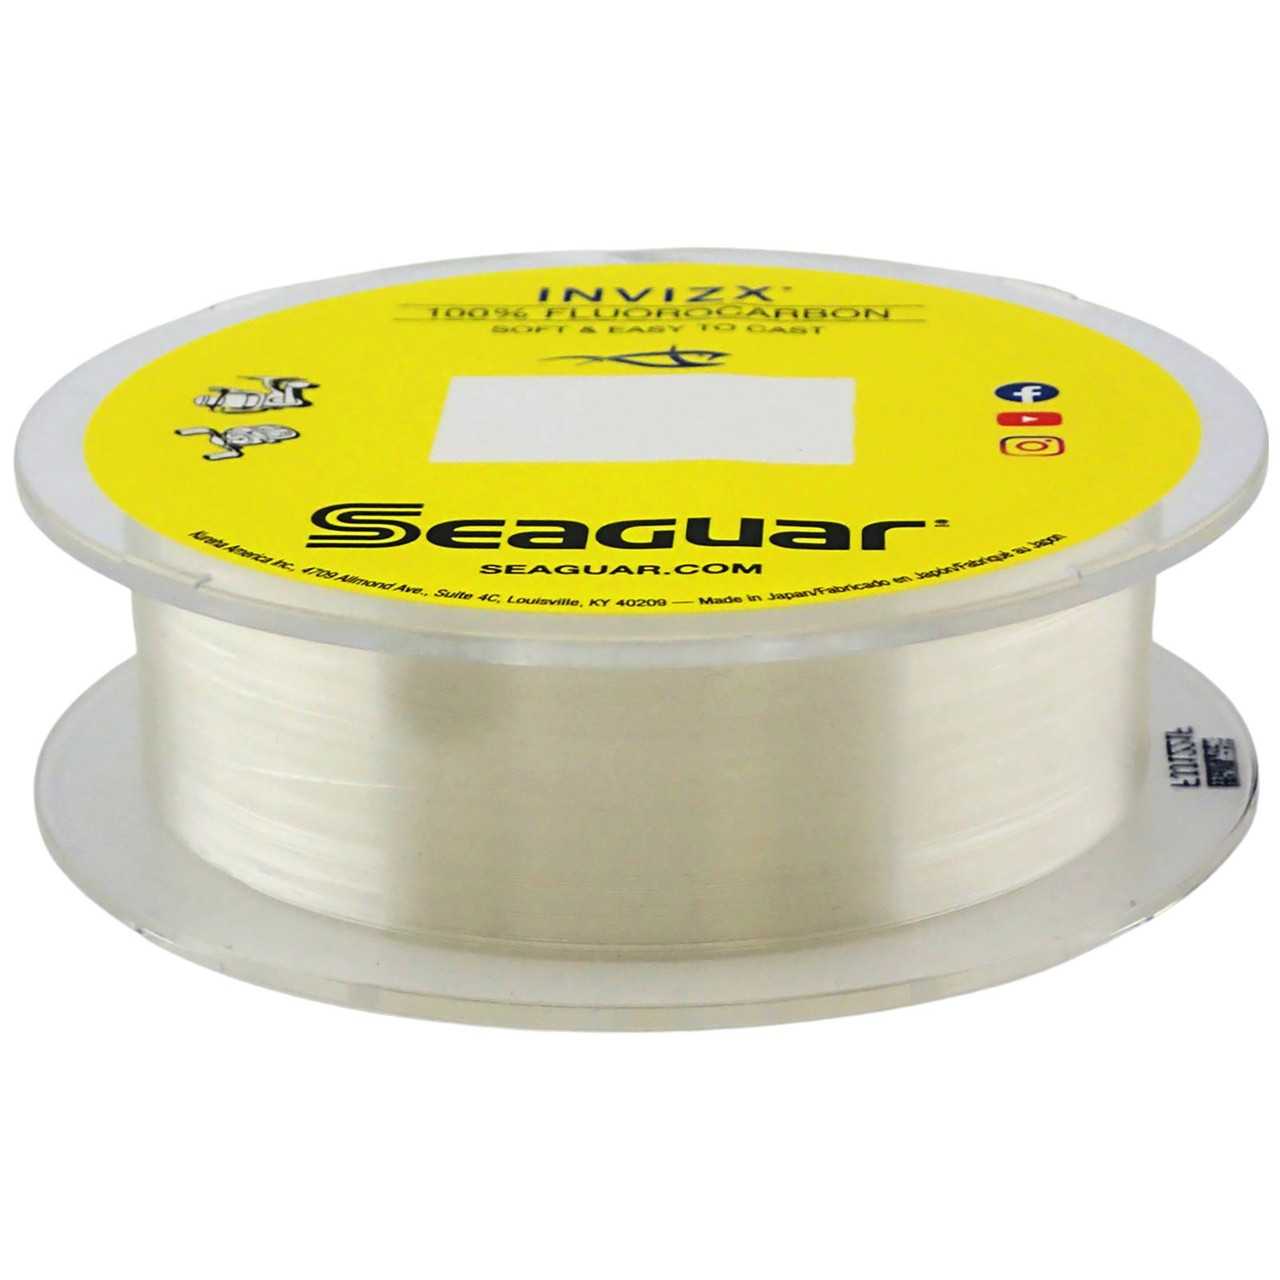 Seaguar Invizx 100% Fluorocarbon Fishing Line,  200 yds,  20lb Test